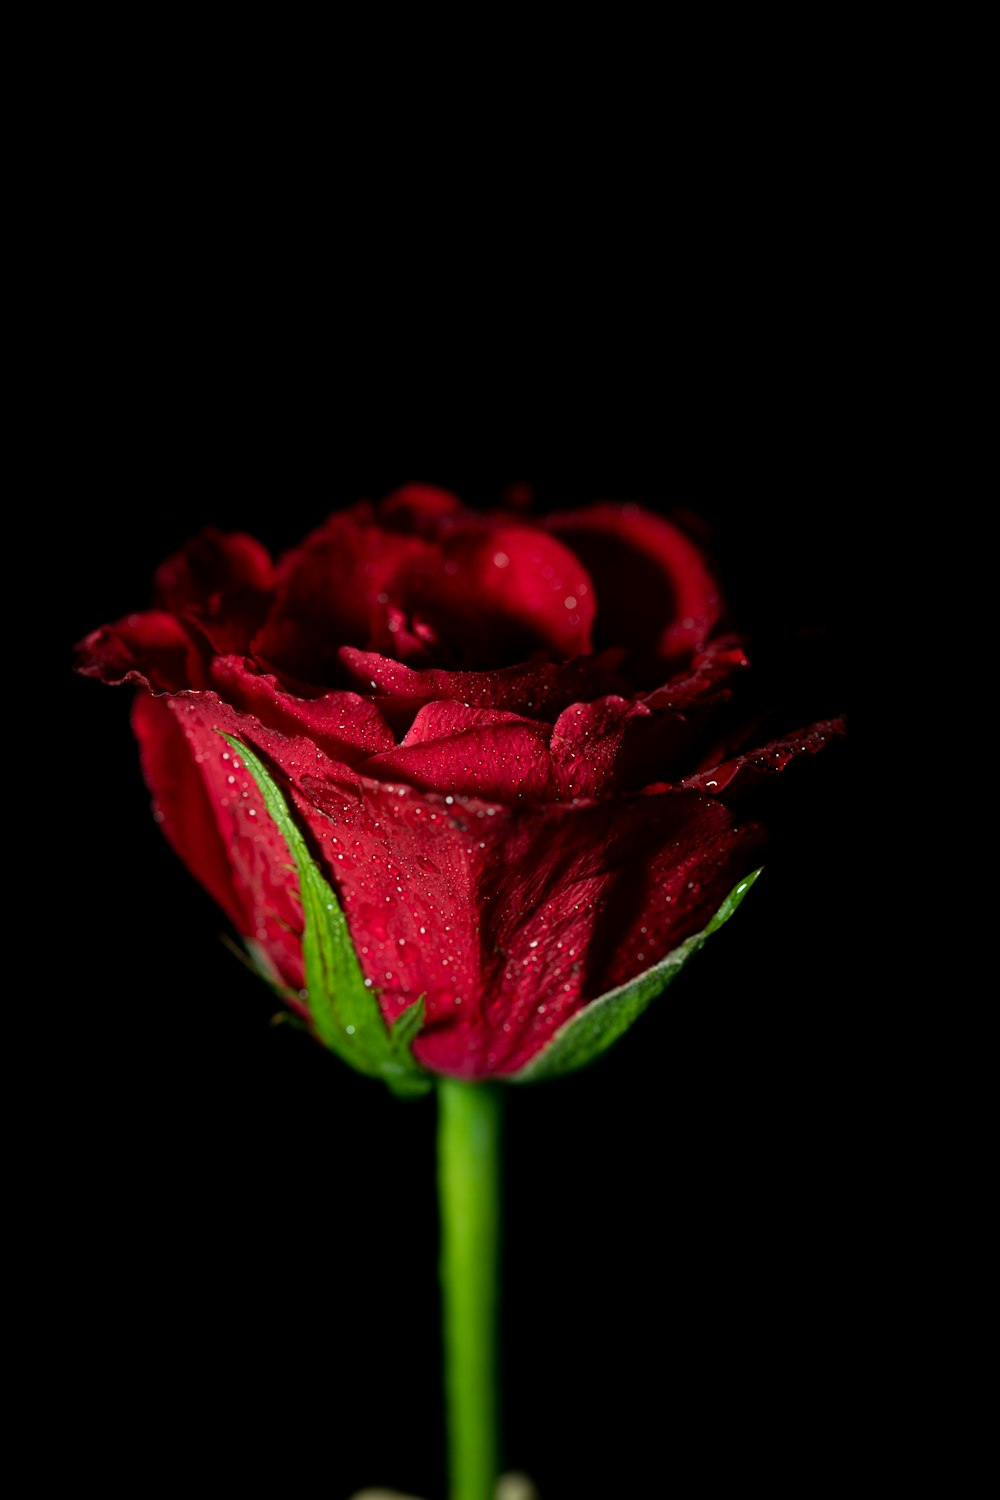 red rose flower on bloom